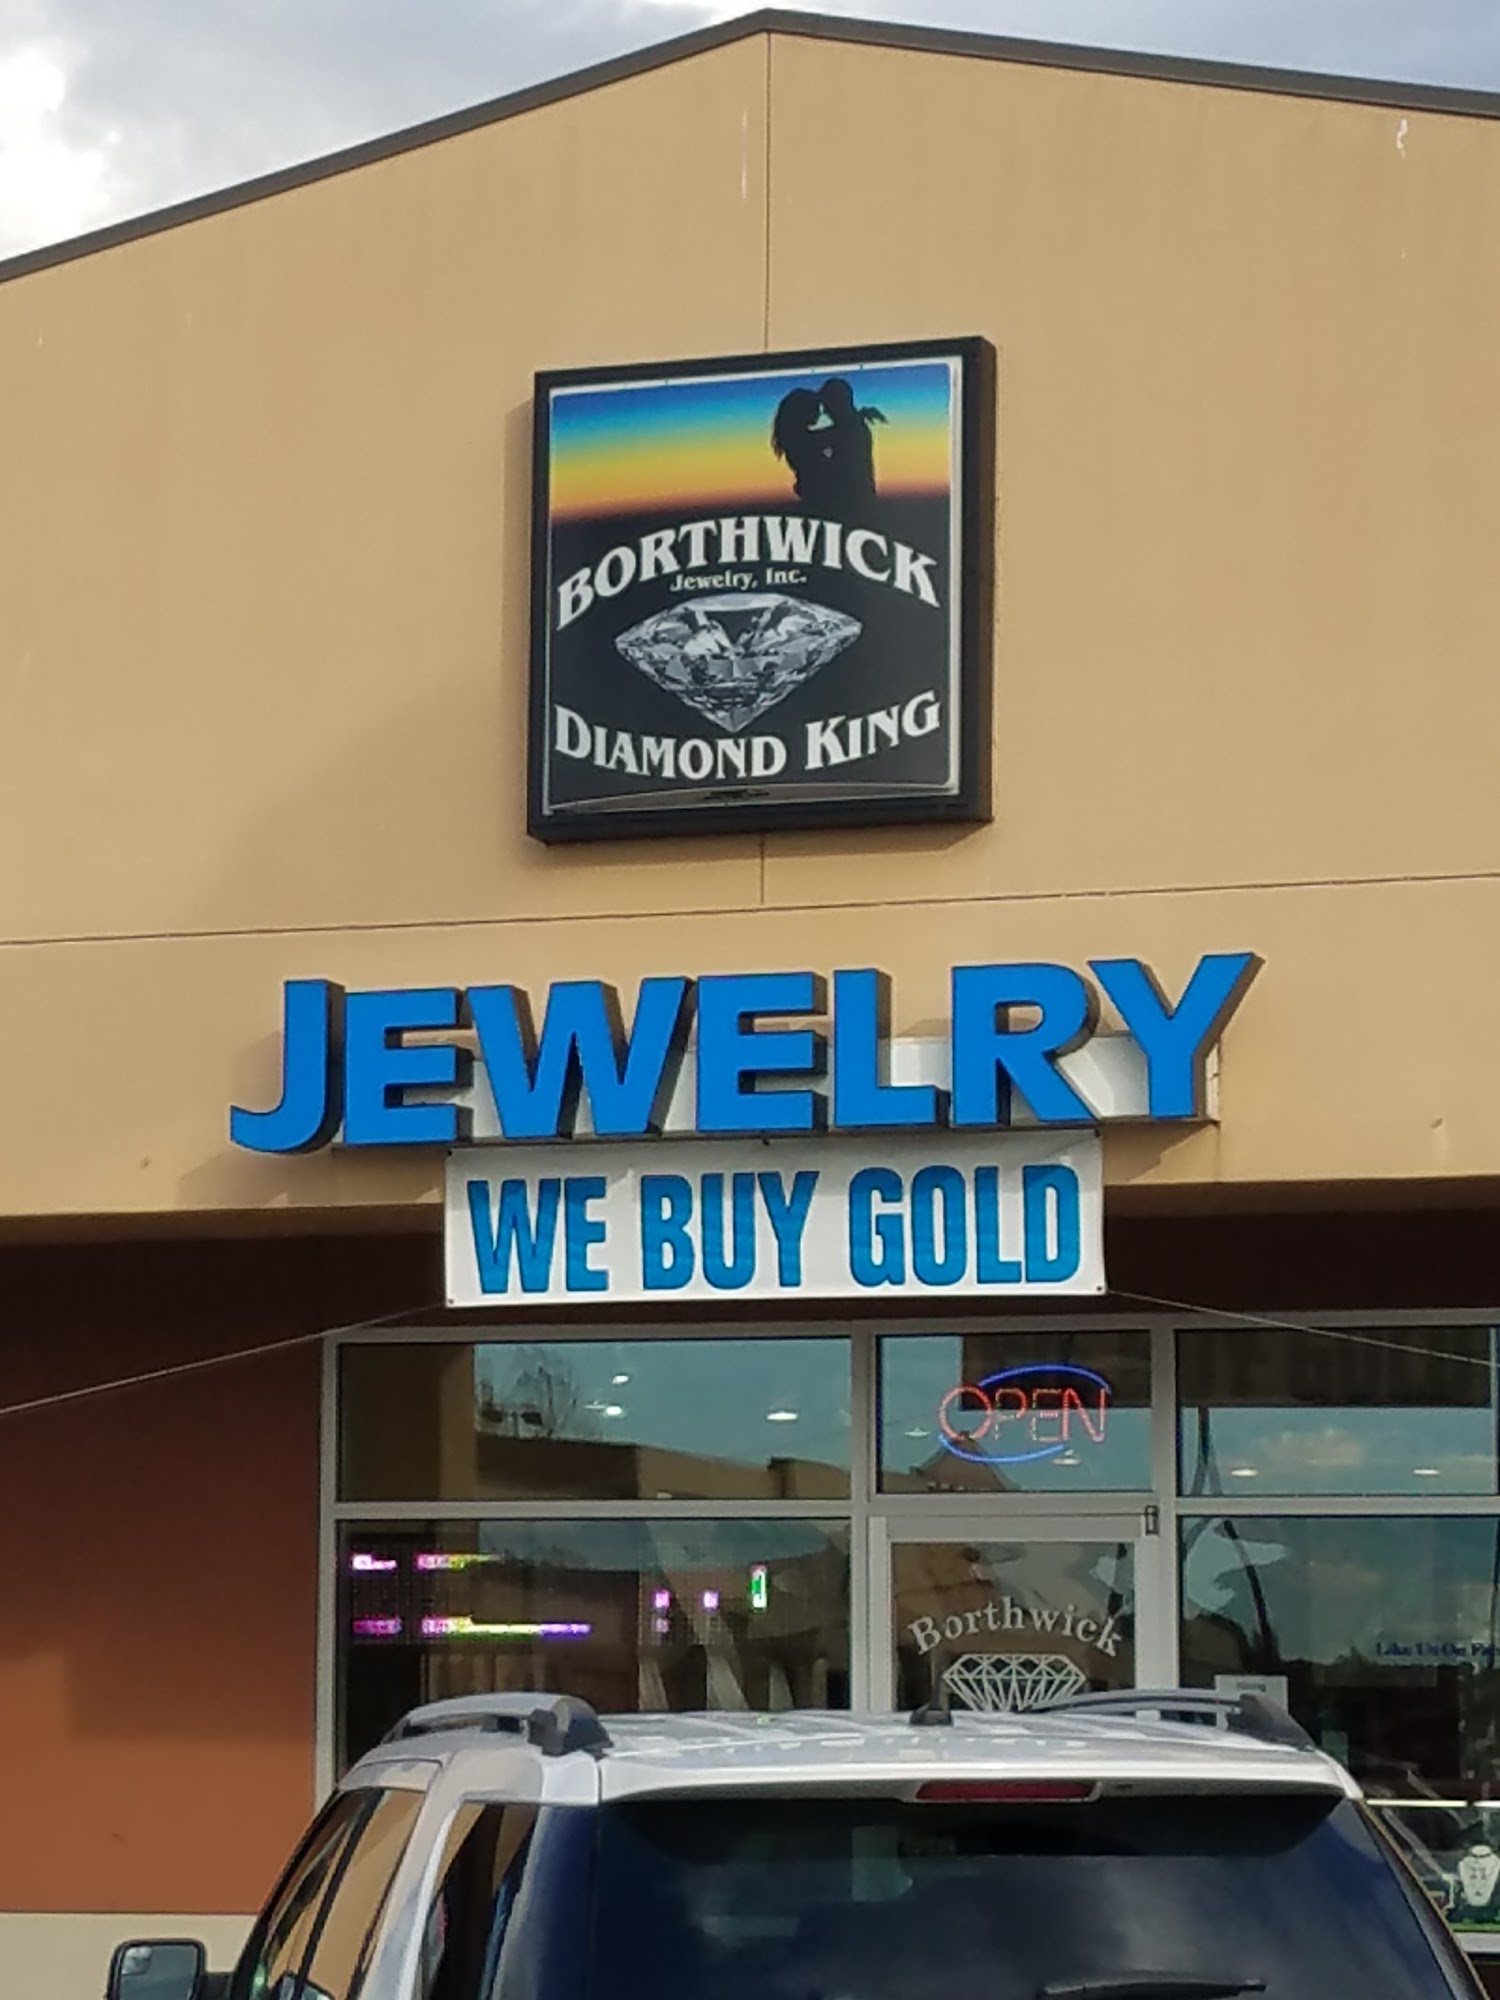 Borthwick Jewelry